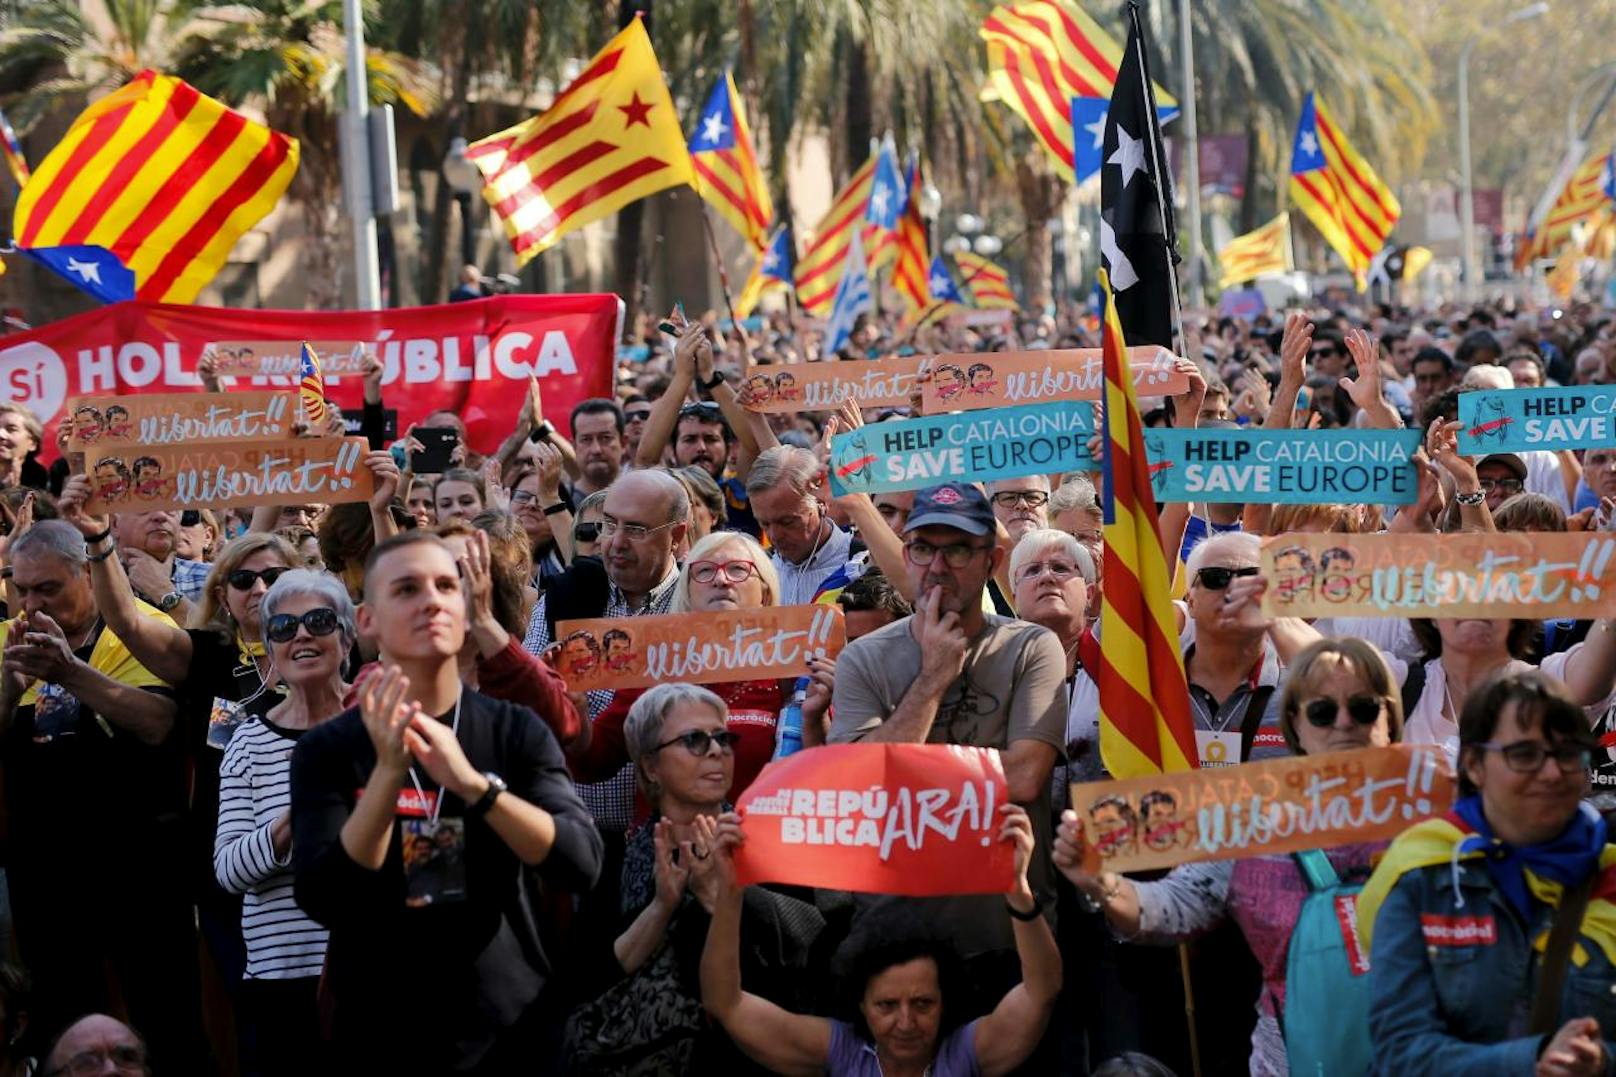 <b>2. Oktober 2017: </b>Bei dem umstrittenen <b>Unabhängigkeitsreferendum</b> haben laut der katalanischen Regionalregierung 90 Prozent der Wahlberechtigten für eine Abspaltung von Spanien gestimmt. Insgesamt hatten sich 2,29 Millionen Menschen daran beteiligt, die Gegner waren der Abstimmung weitgehend ferngeblieben. 

<b>Mehr Infos: </b> <a href="https://www.heute.at/welt/news/story/Referendum-Katalonien-90-Prozent-fuer-Unabhaengigkeit-41777484" target="_blank">Katalonien: 90 Prozent wollen Unabhängigkeit</a>